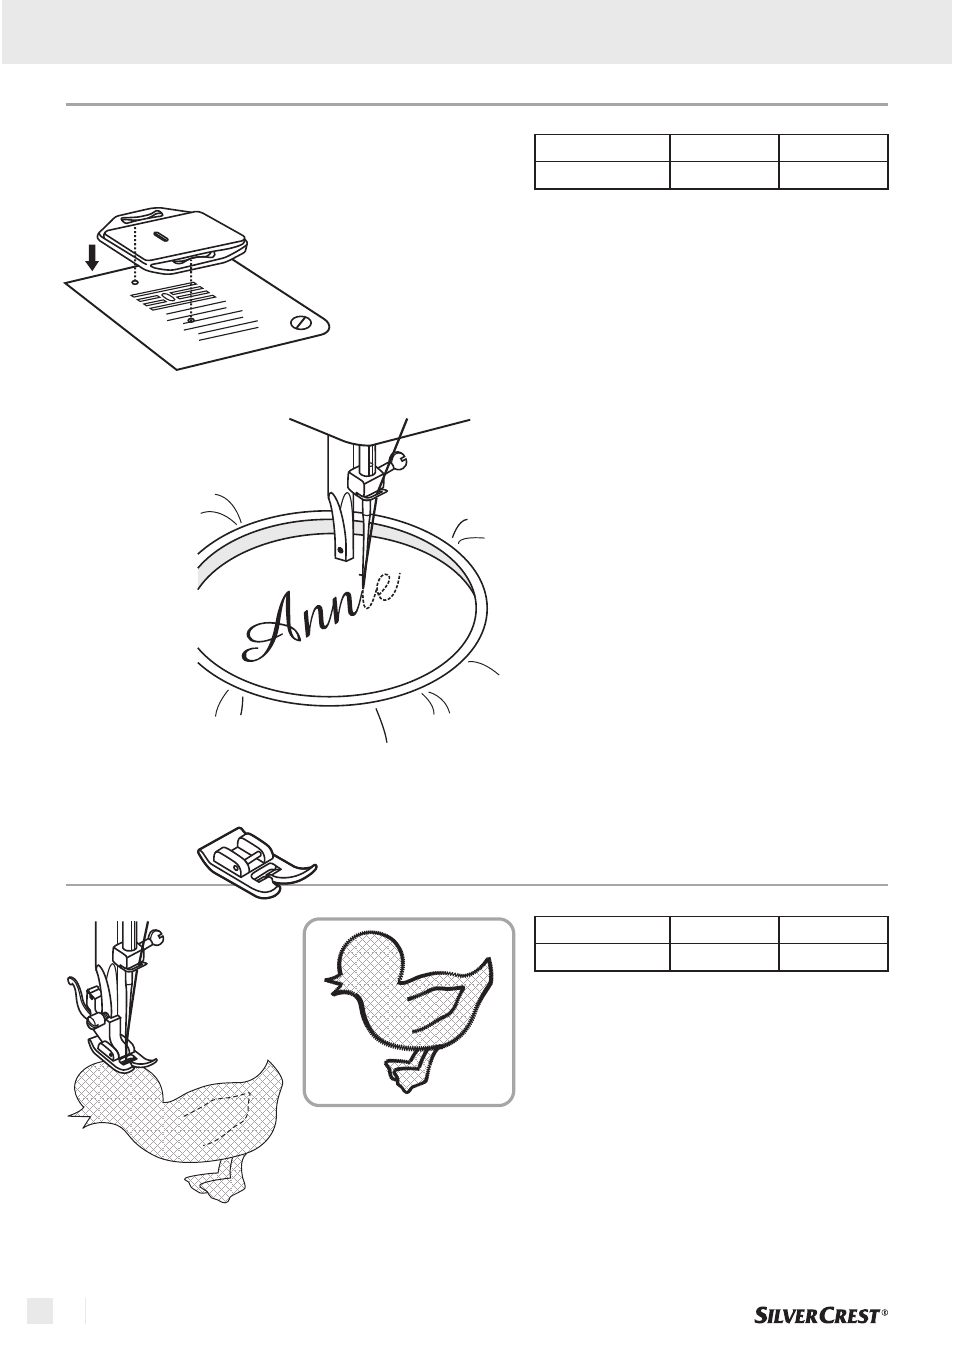 Aufnähen, Stickereien mit stickrahmen, Grundlagen des nähens | Silvercrest  SNMD 33 A1 User Manual | Page 66 / 94